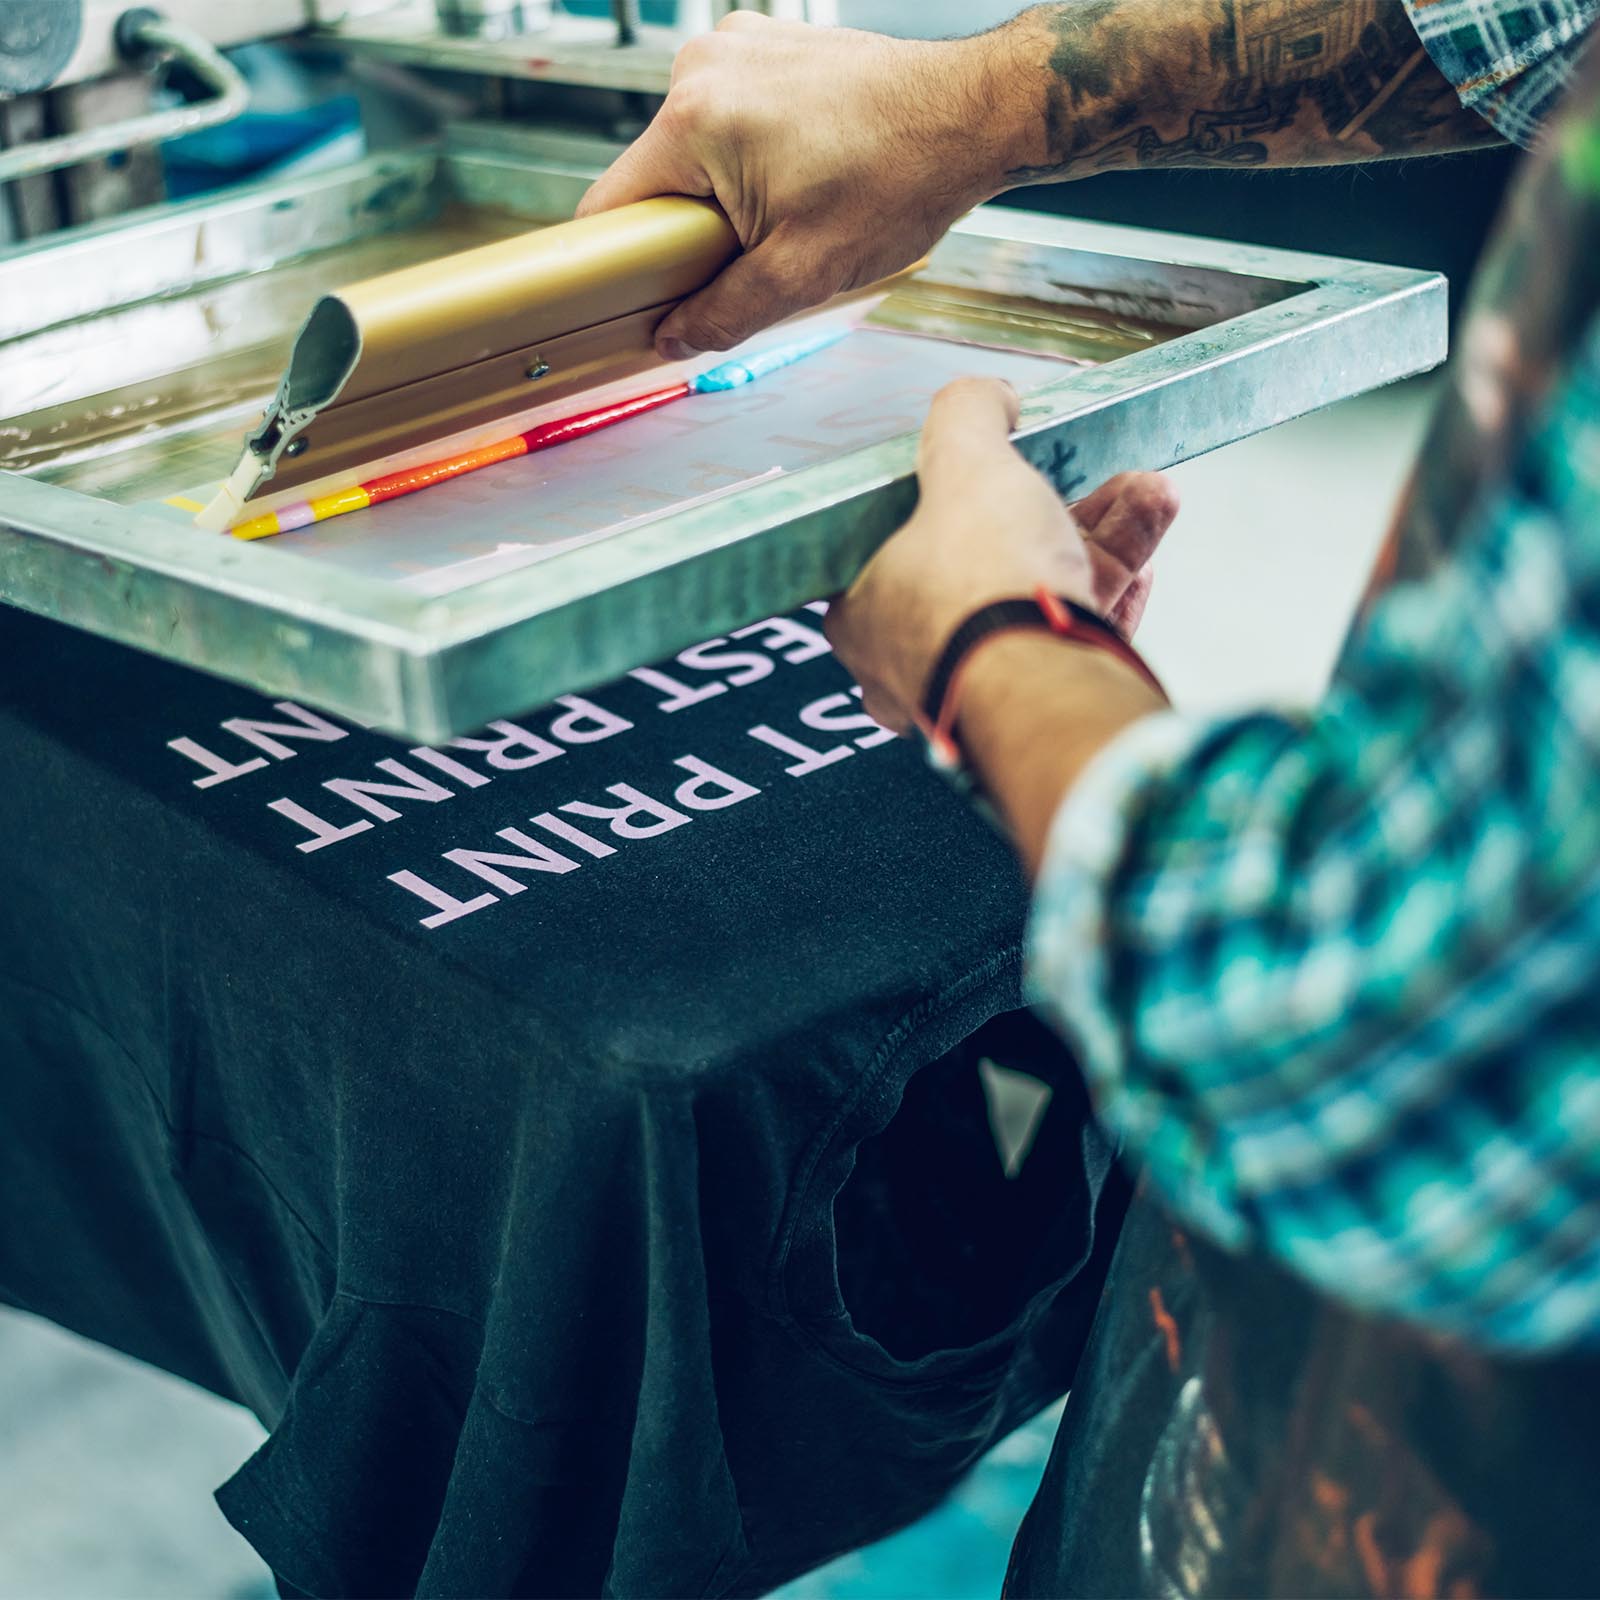 Print on Demand im T-Shirt Bereich: Die Zukunft des T-Shirt-Drucks